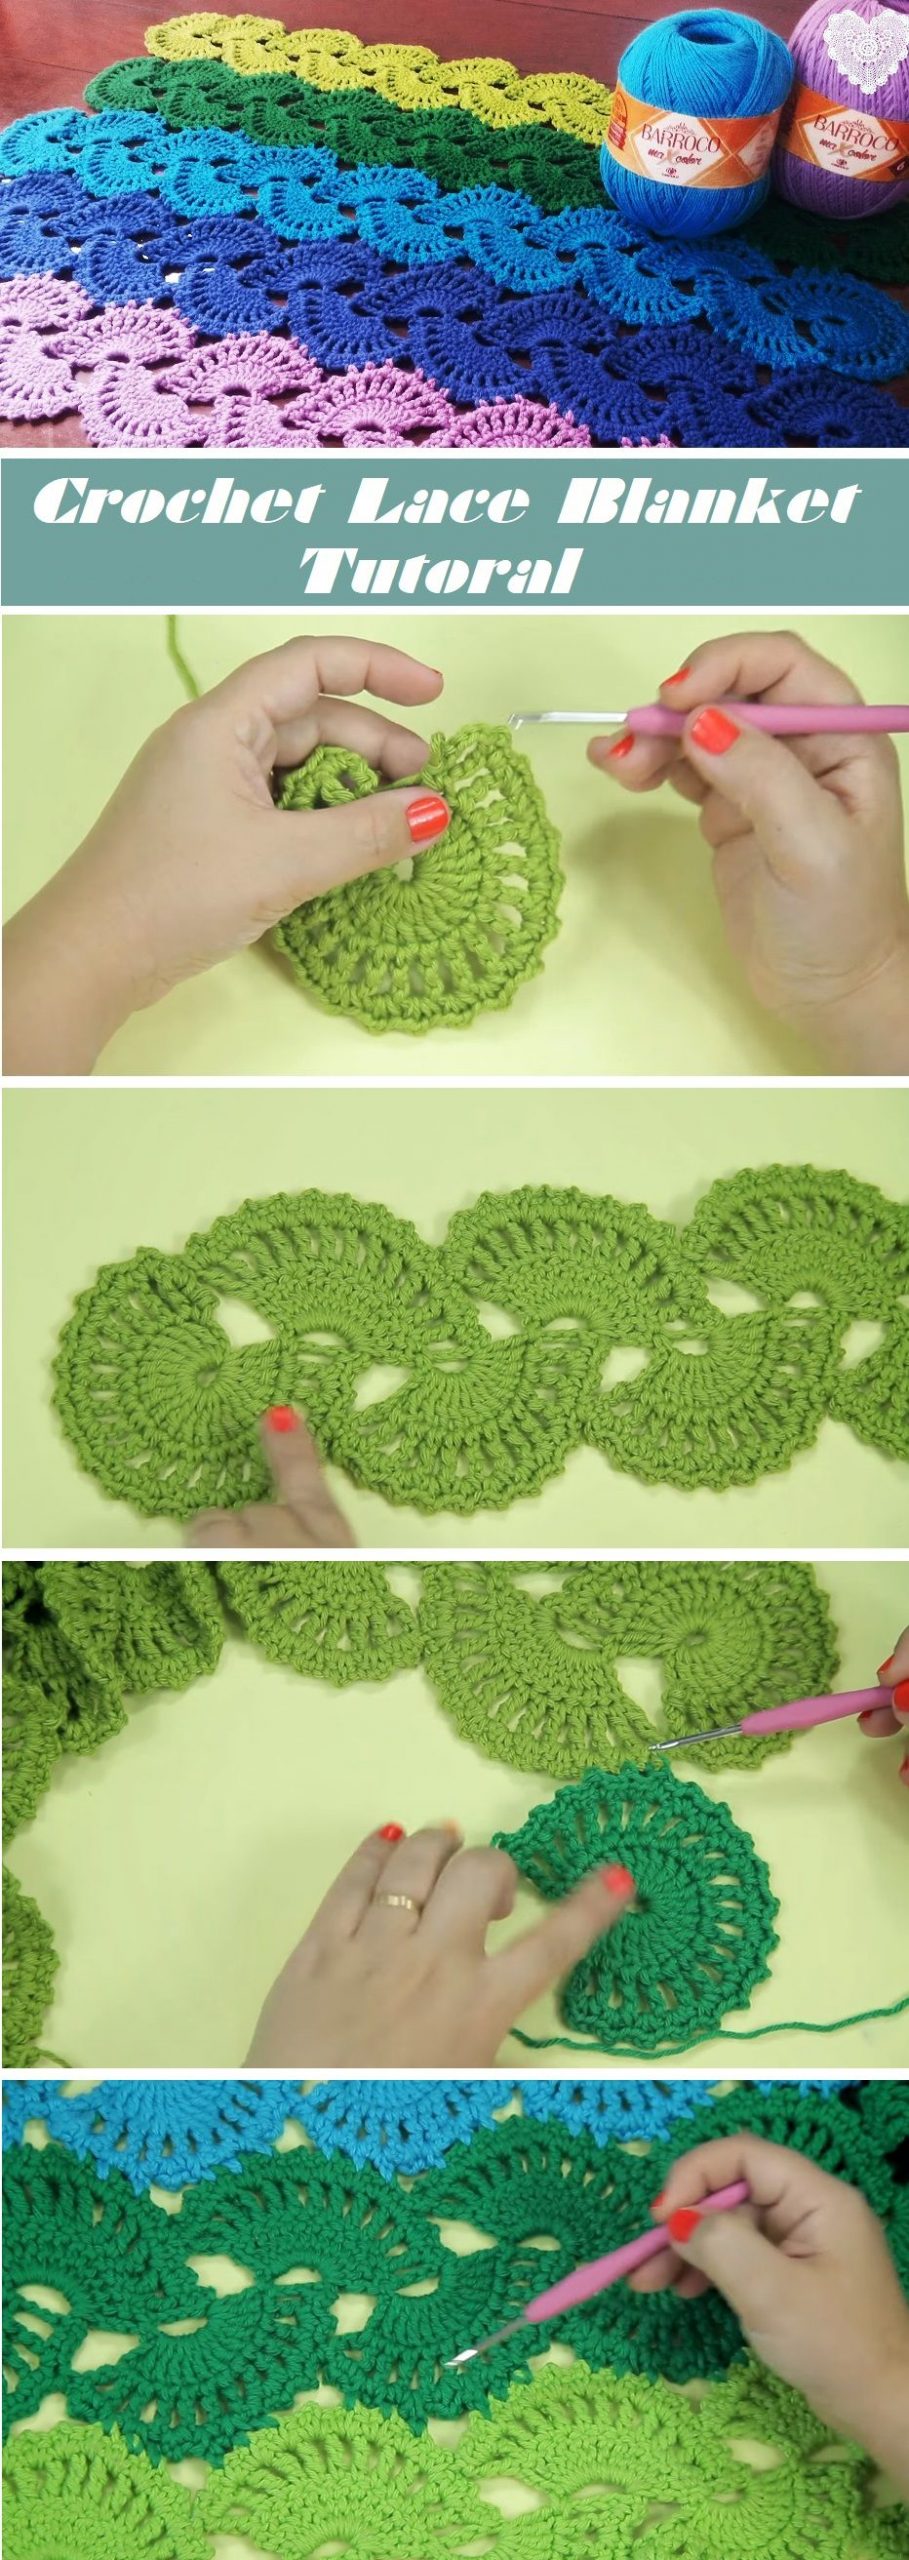 Crochet Lace Blanket – Tutorial